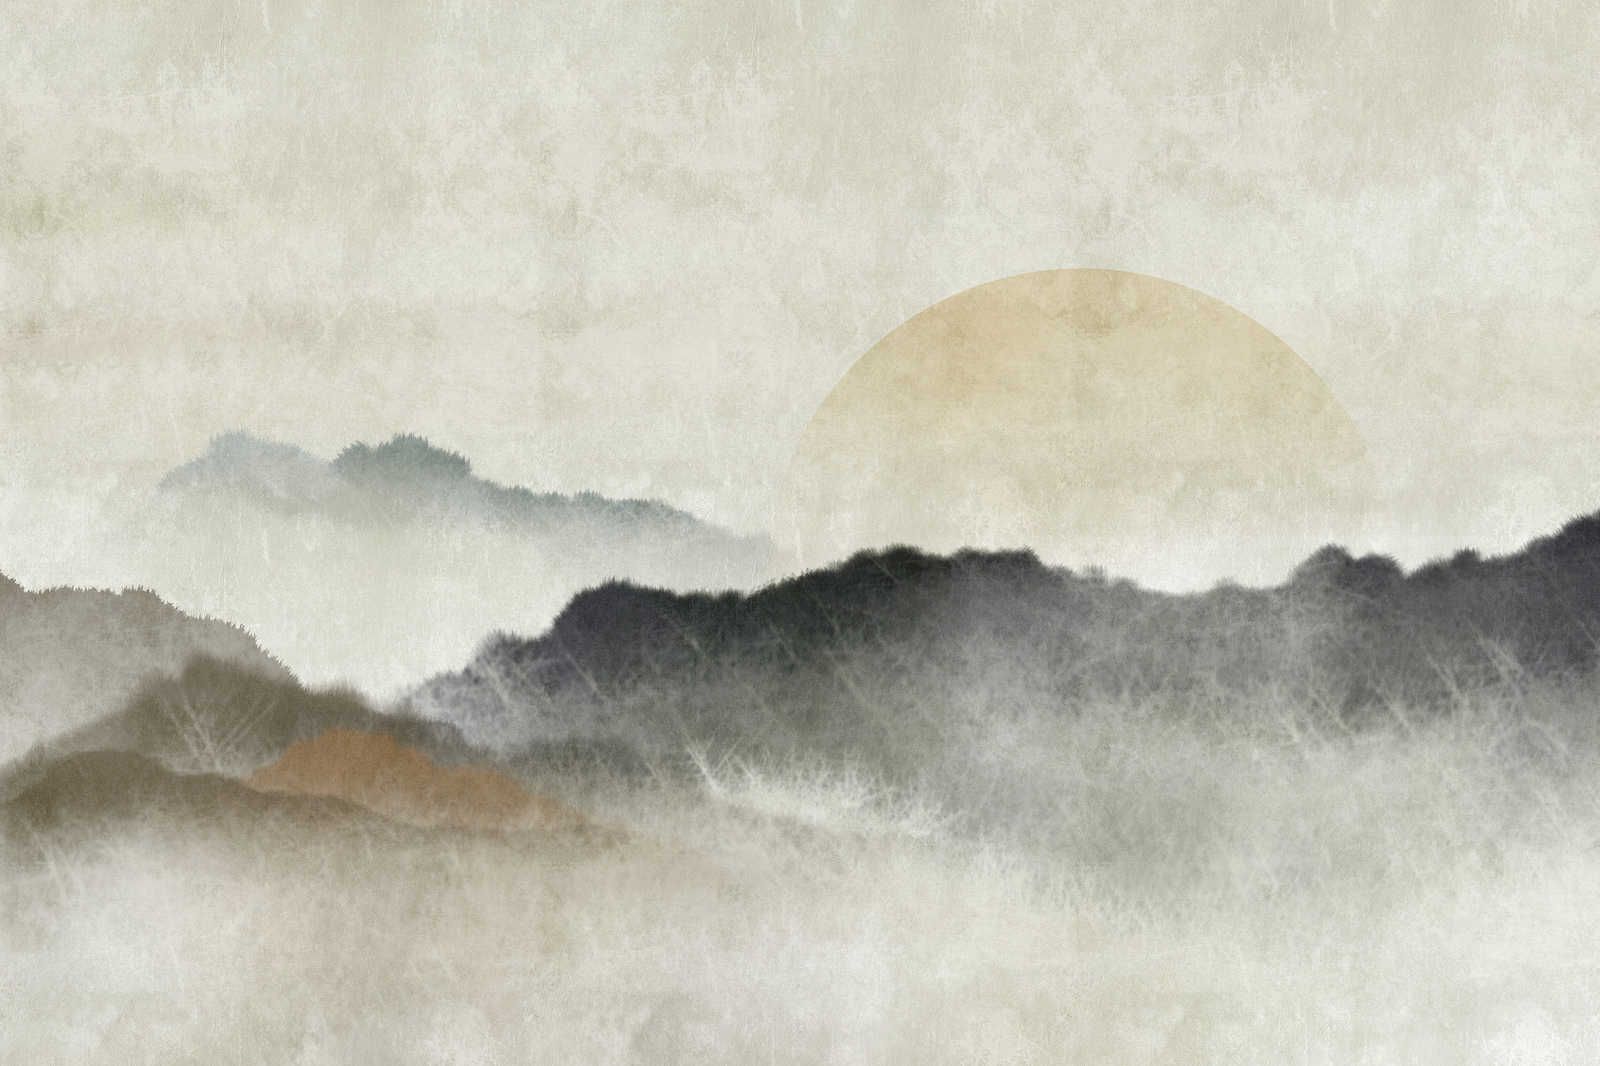             Akaishi 1 - Quadro su tela Stampa asiatica Catena montuosa all'alba - 0,90 m x 0,60 m
        